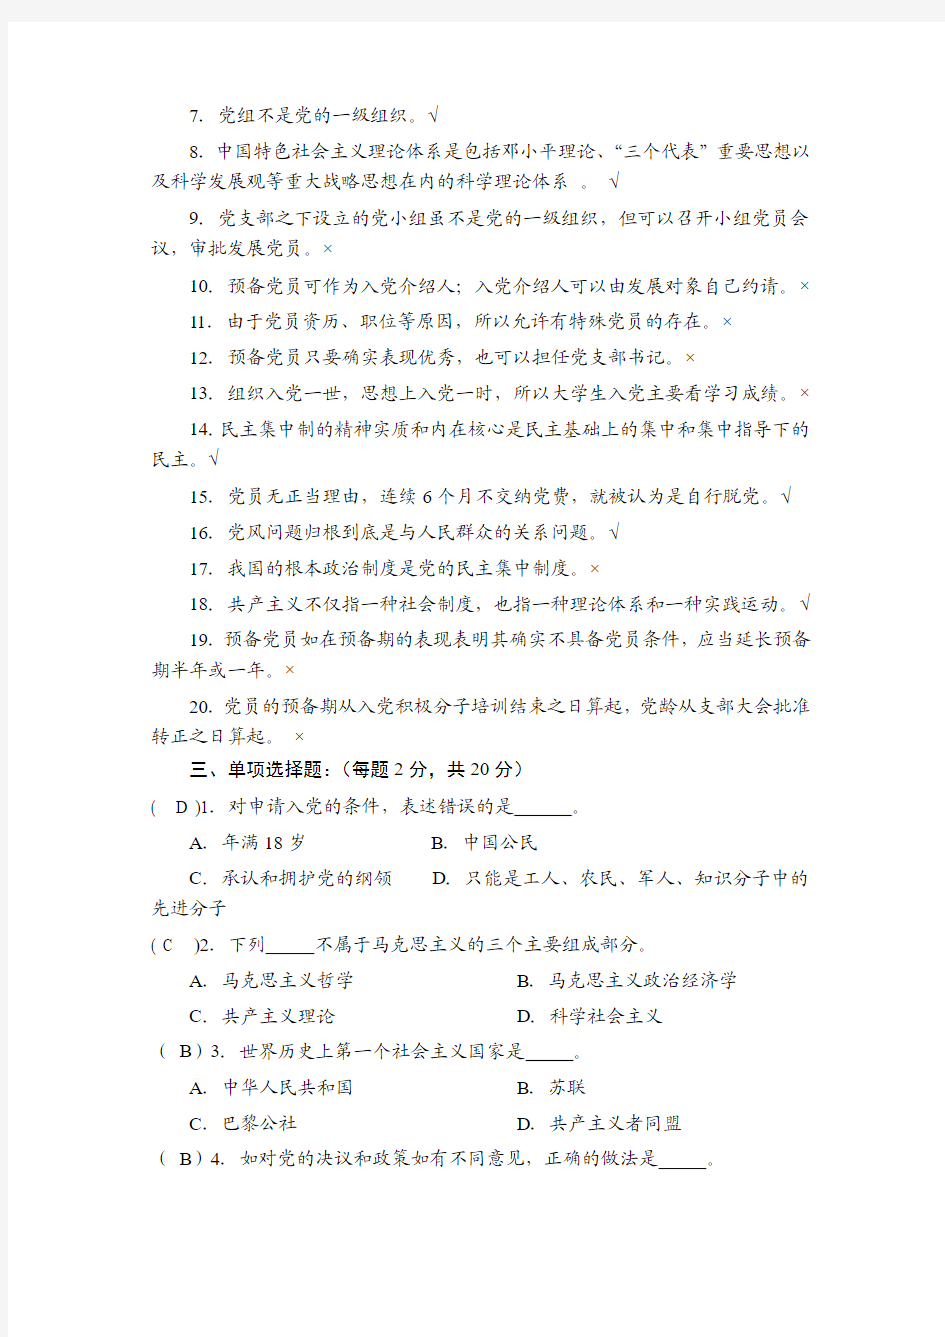 湘潭大学党委党校第83期学生入党积极分子培训班考试试卷